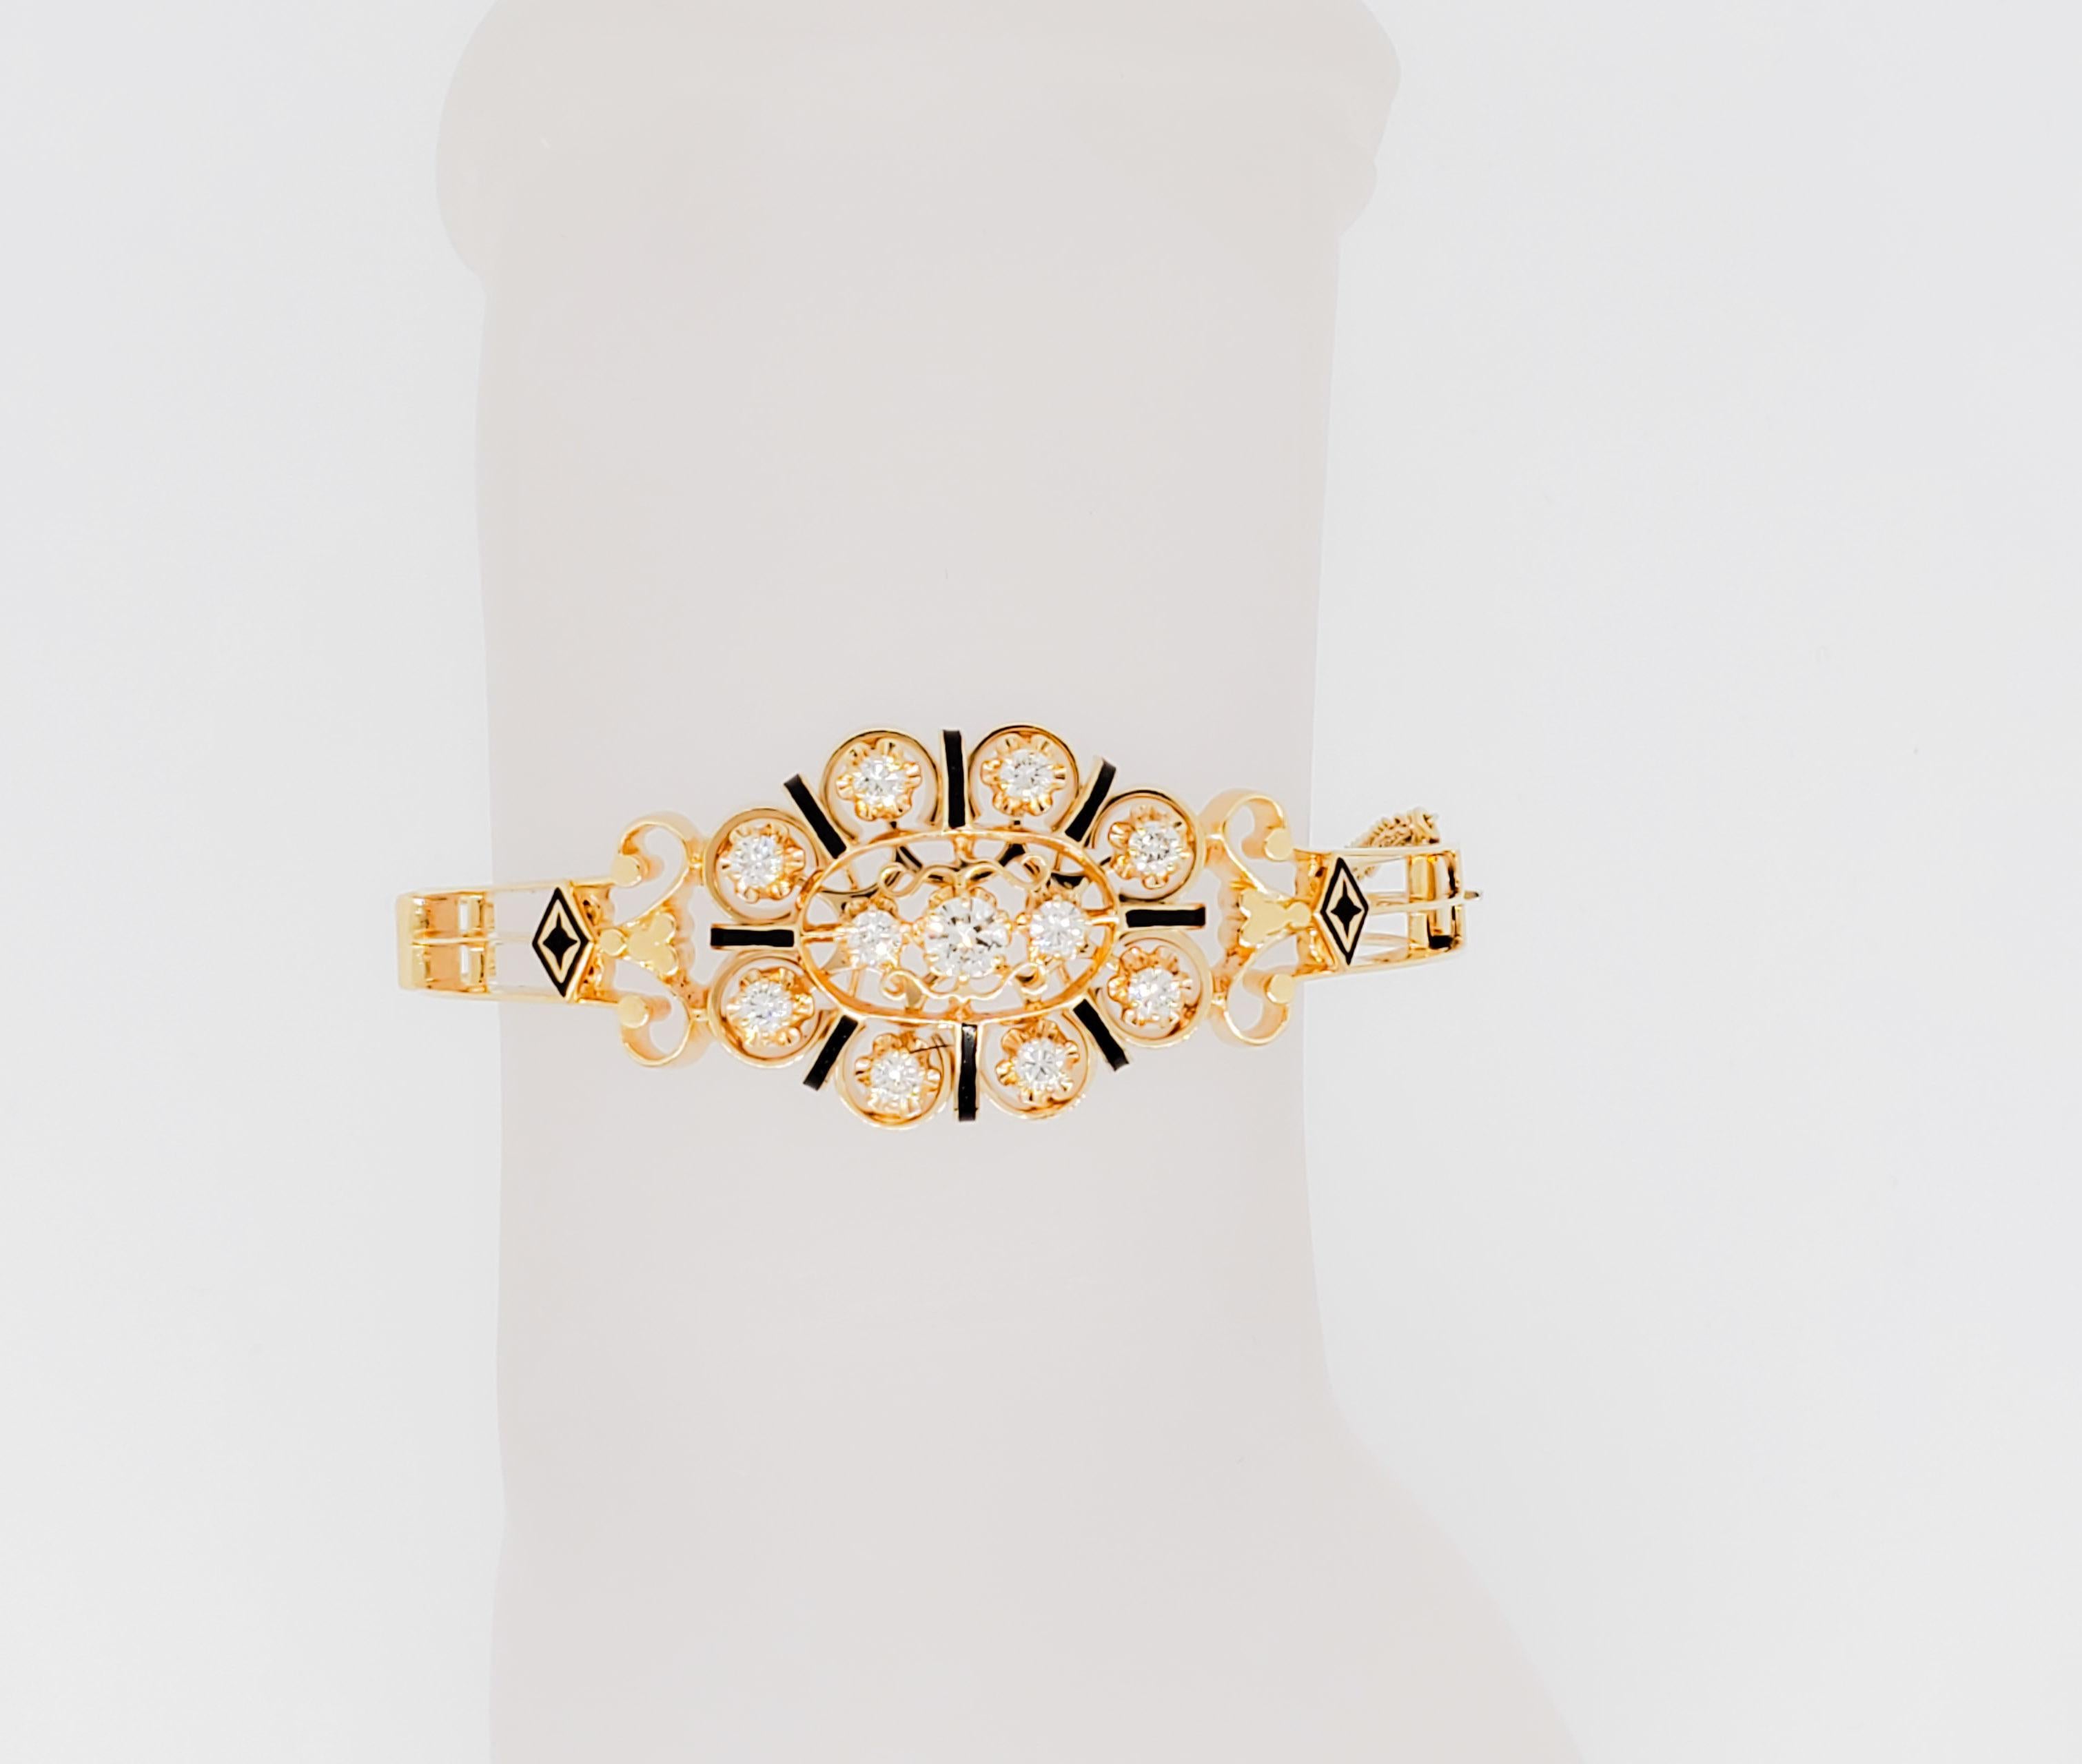 Magnifique bracelet avec 1,00 ct. de diamants blancs ronds de bonne qualité et émail noir. Fabriqué à la main en or jaune 14k.